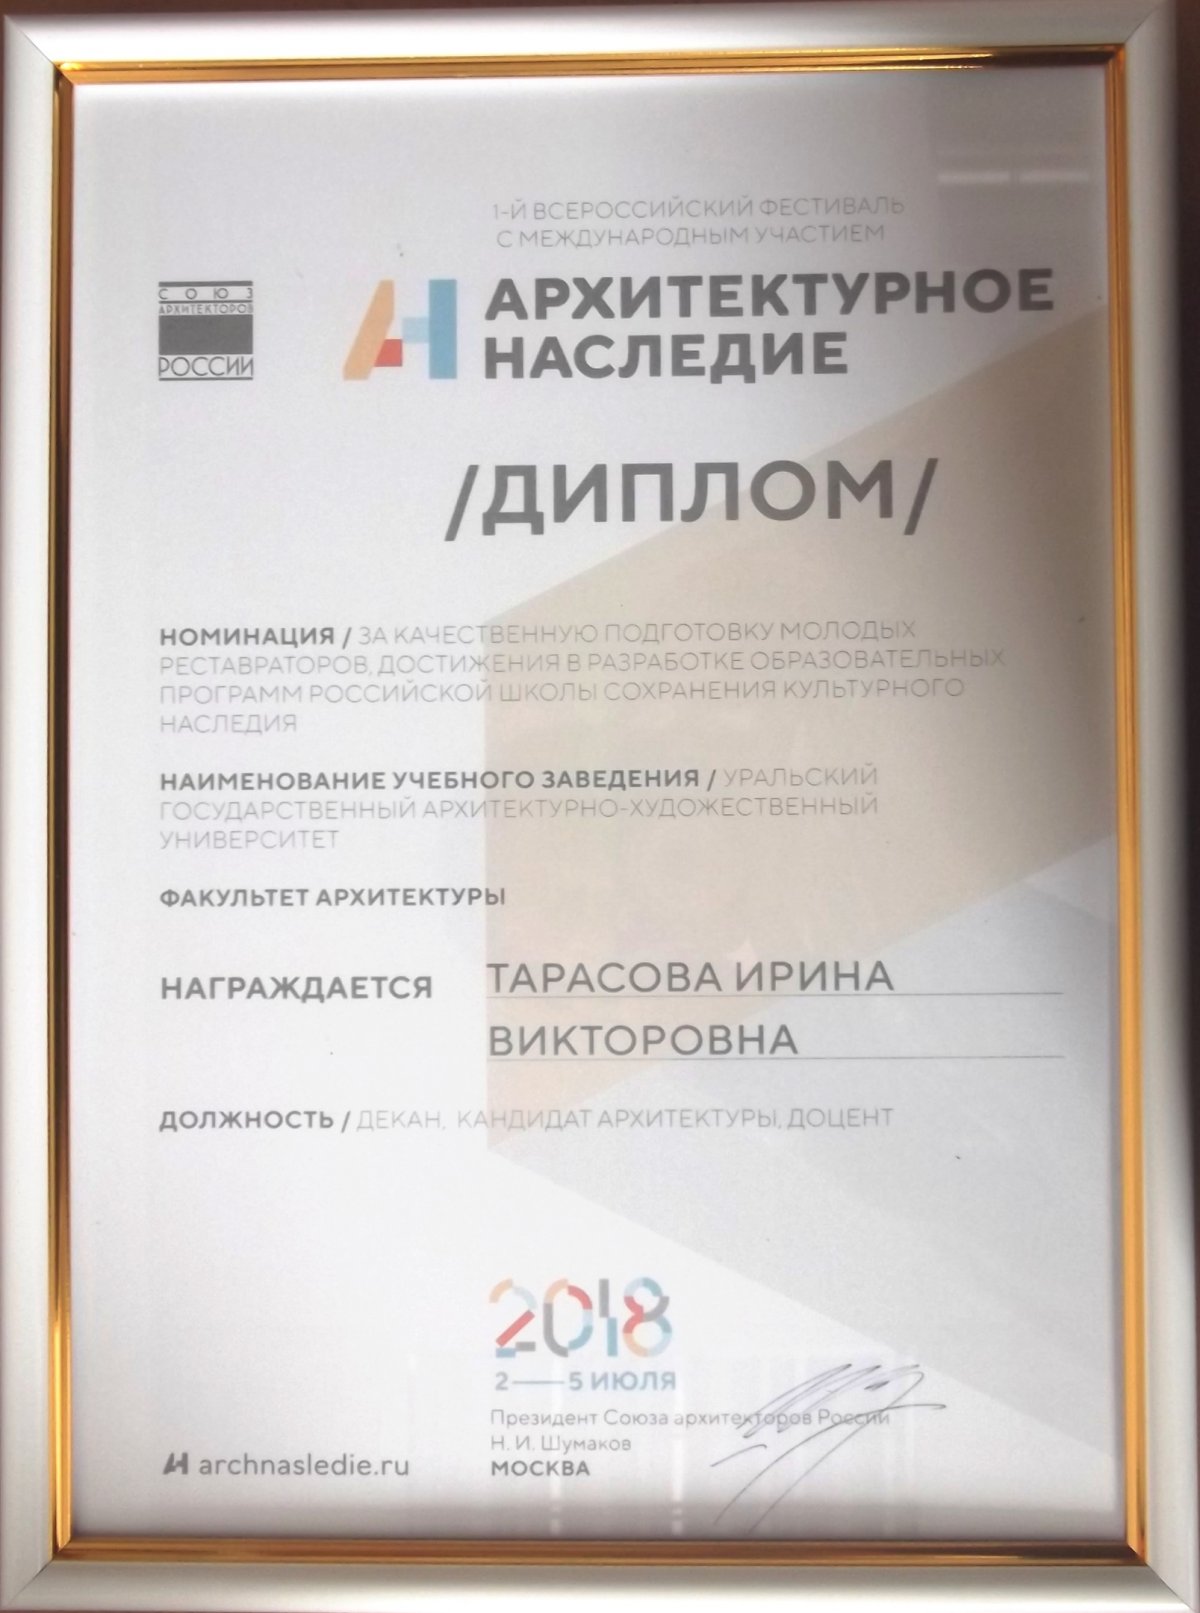 Сотрудники УрГАХУ награждены дипломами Всероссийского фестиваля с международным участием «Архитектурное наследие», проходившего в Москве 2 - 5 июля.